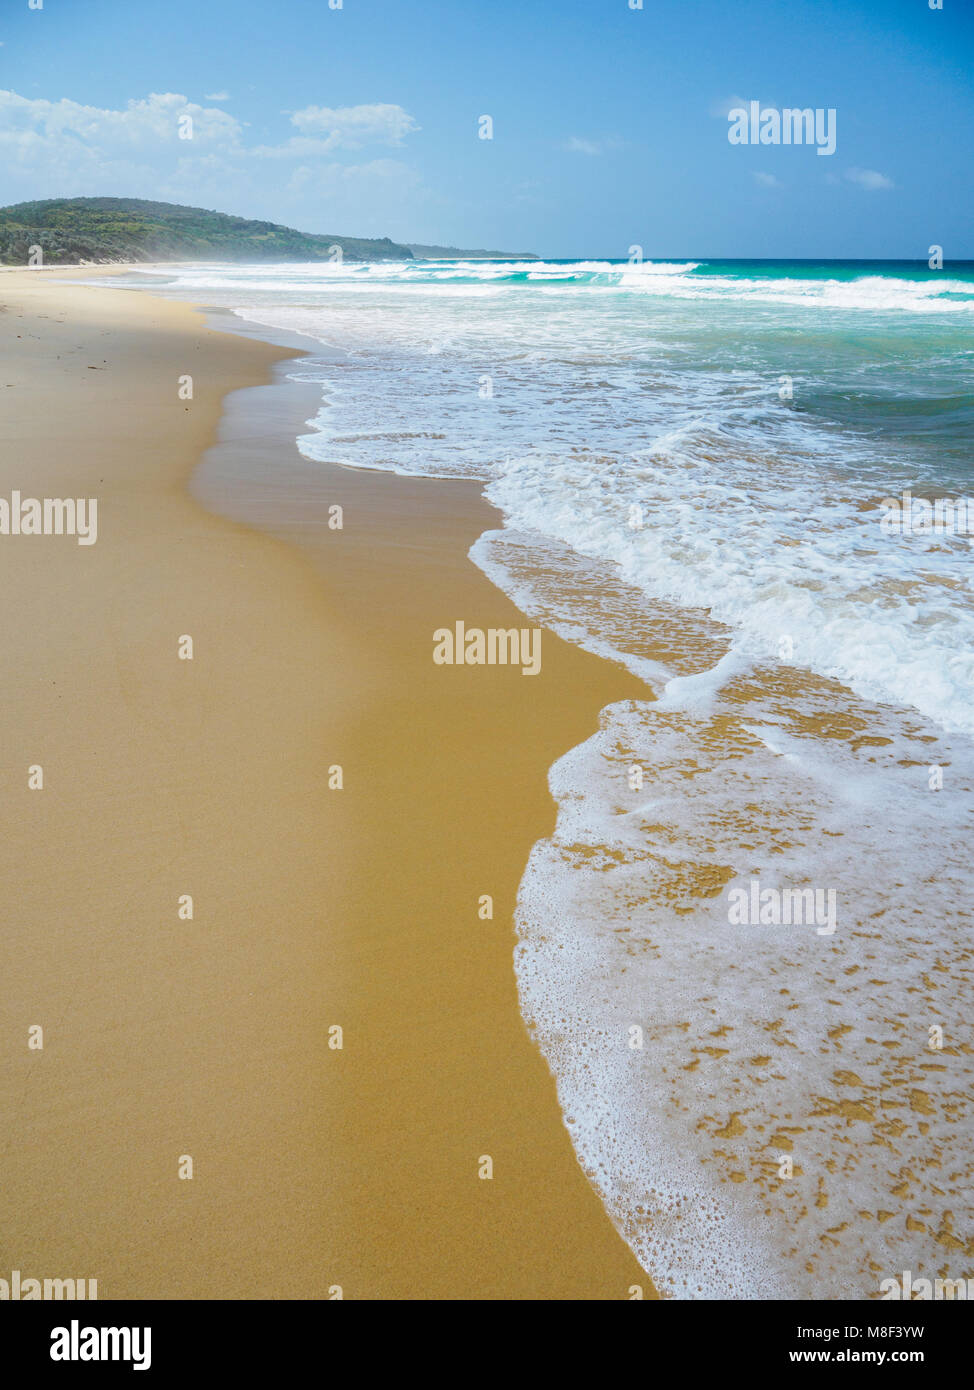 L'Australie, Nouvelle Galles du Sud, de Bermagui, vue panoramique sur mer et plage de sable Banque D'Images